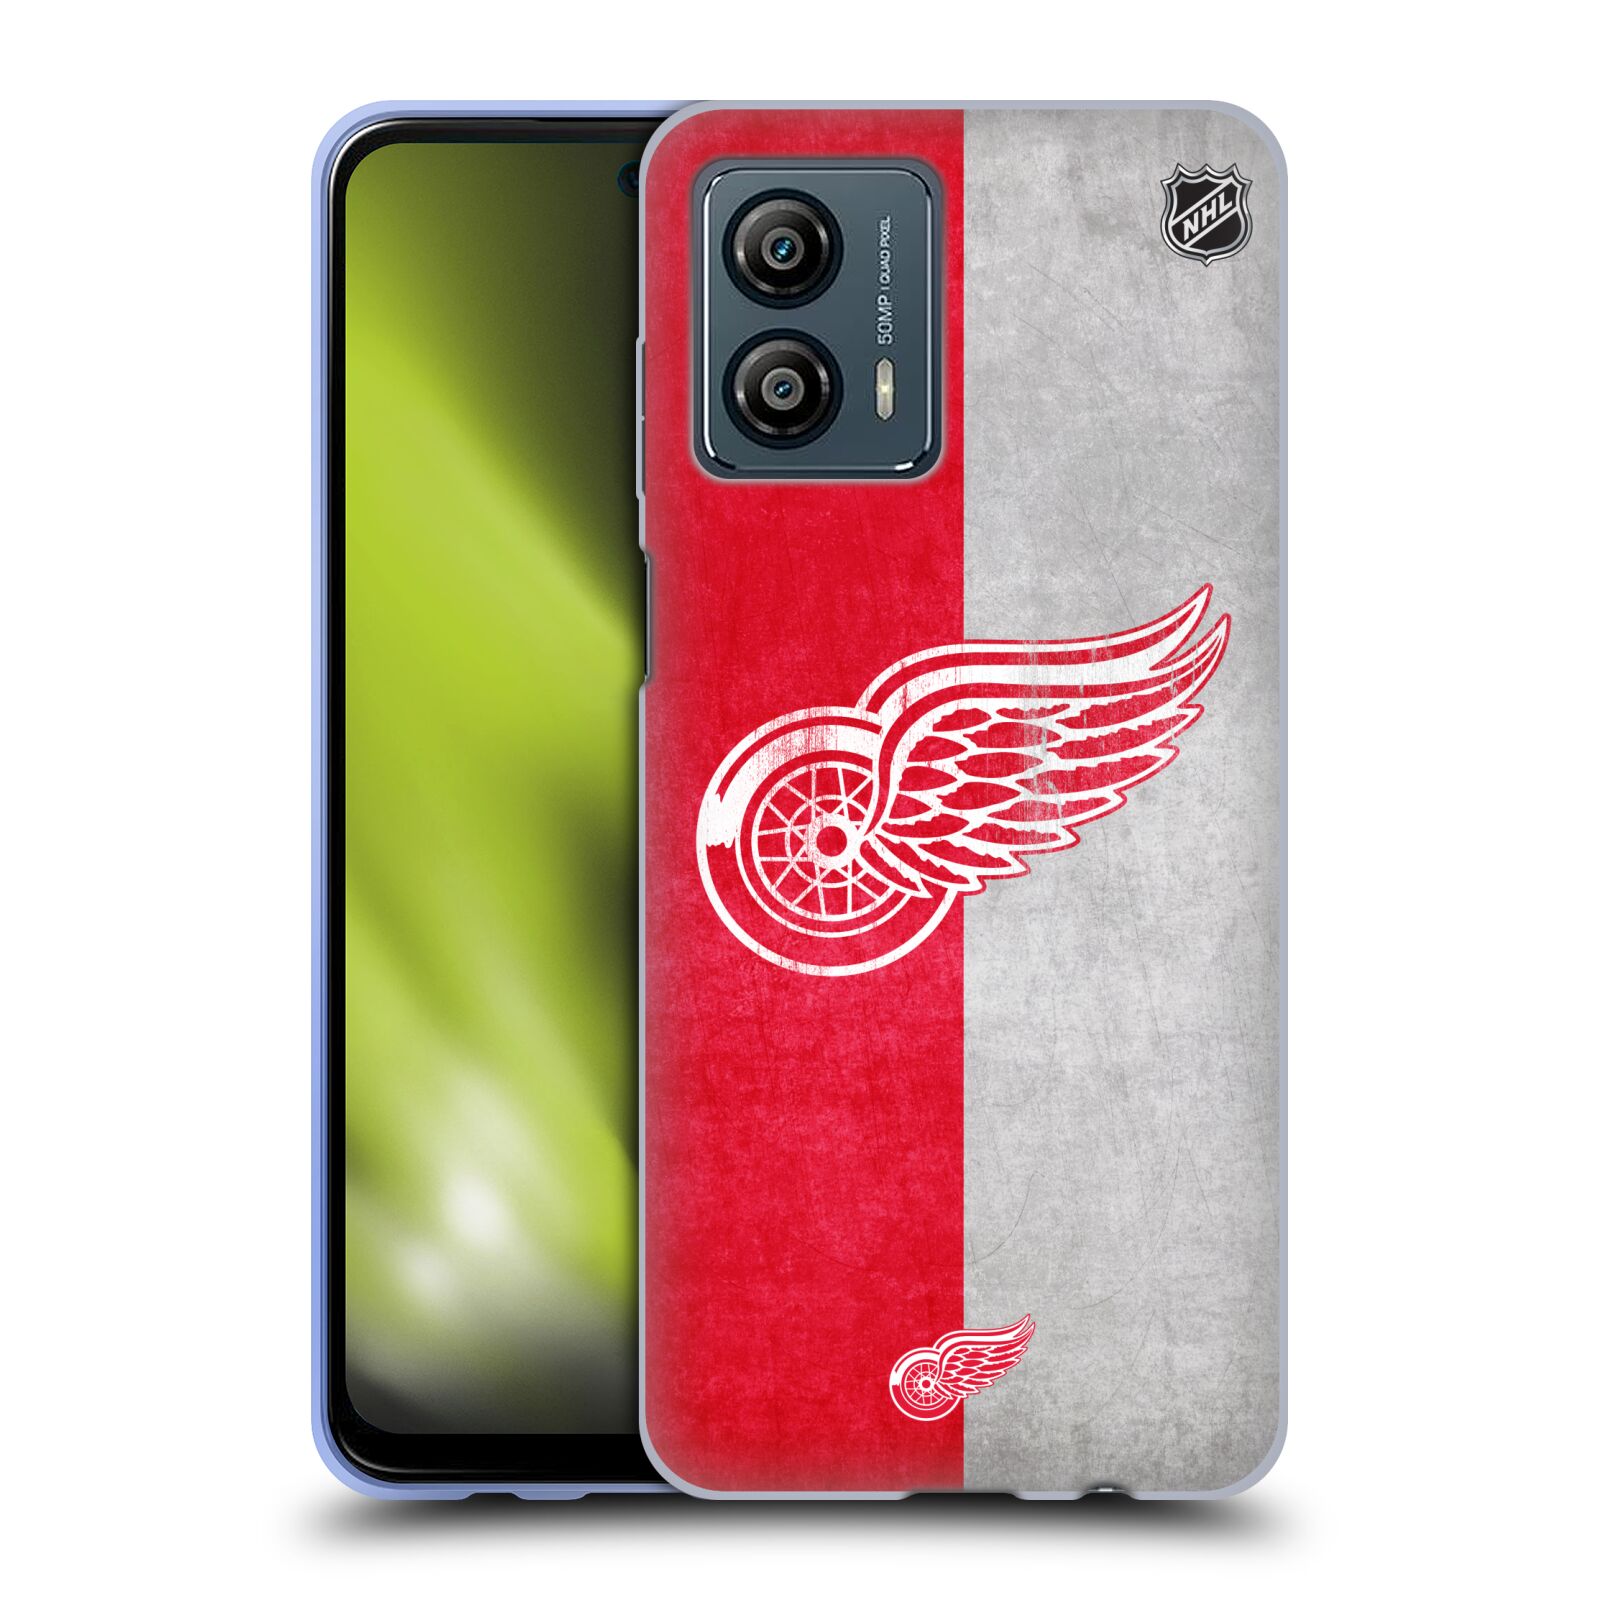 Silikonové pouzdro na mobil Motorola Moto G53 5G - NHL - Půlené logo Detroit Red Wings (Silikonový kryt, obal, pouzdro na mobilní telefon Motorola Moto G53 5G s licencovaným motivem NHL - Půlené logo Detroit Red Wings)